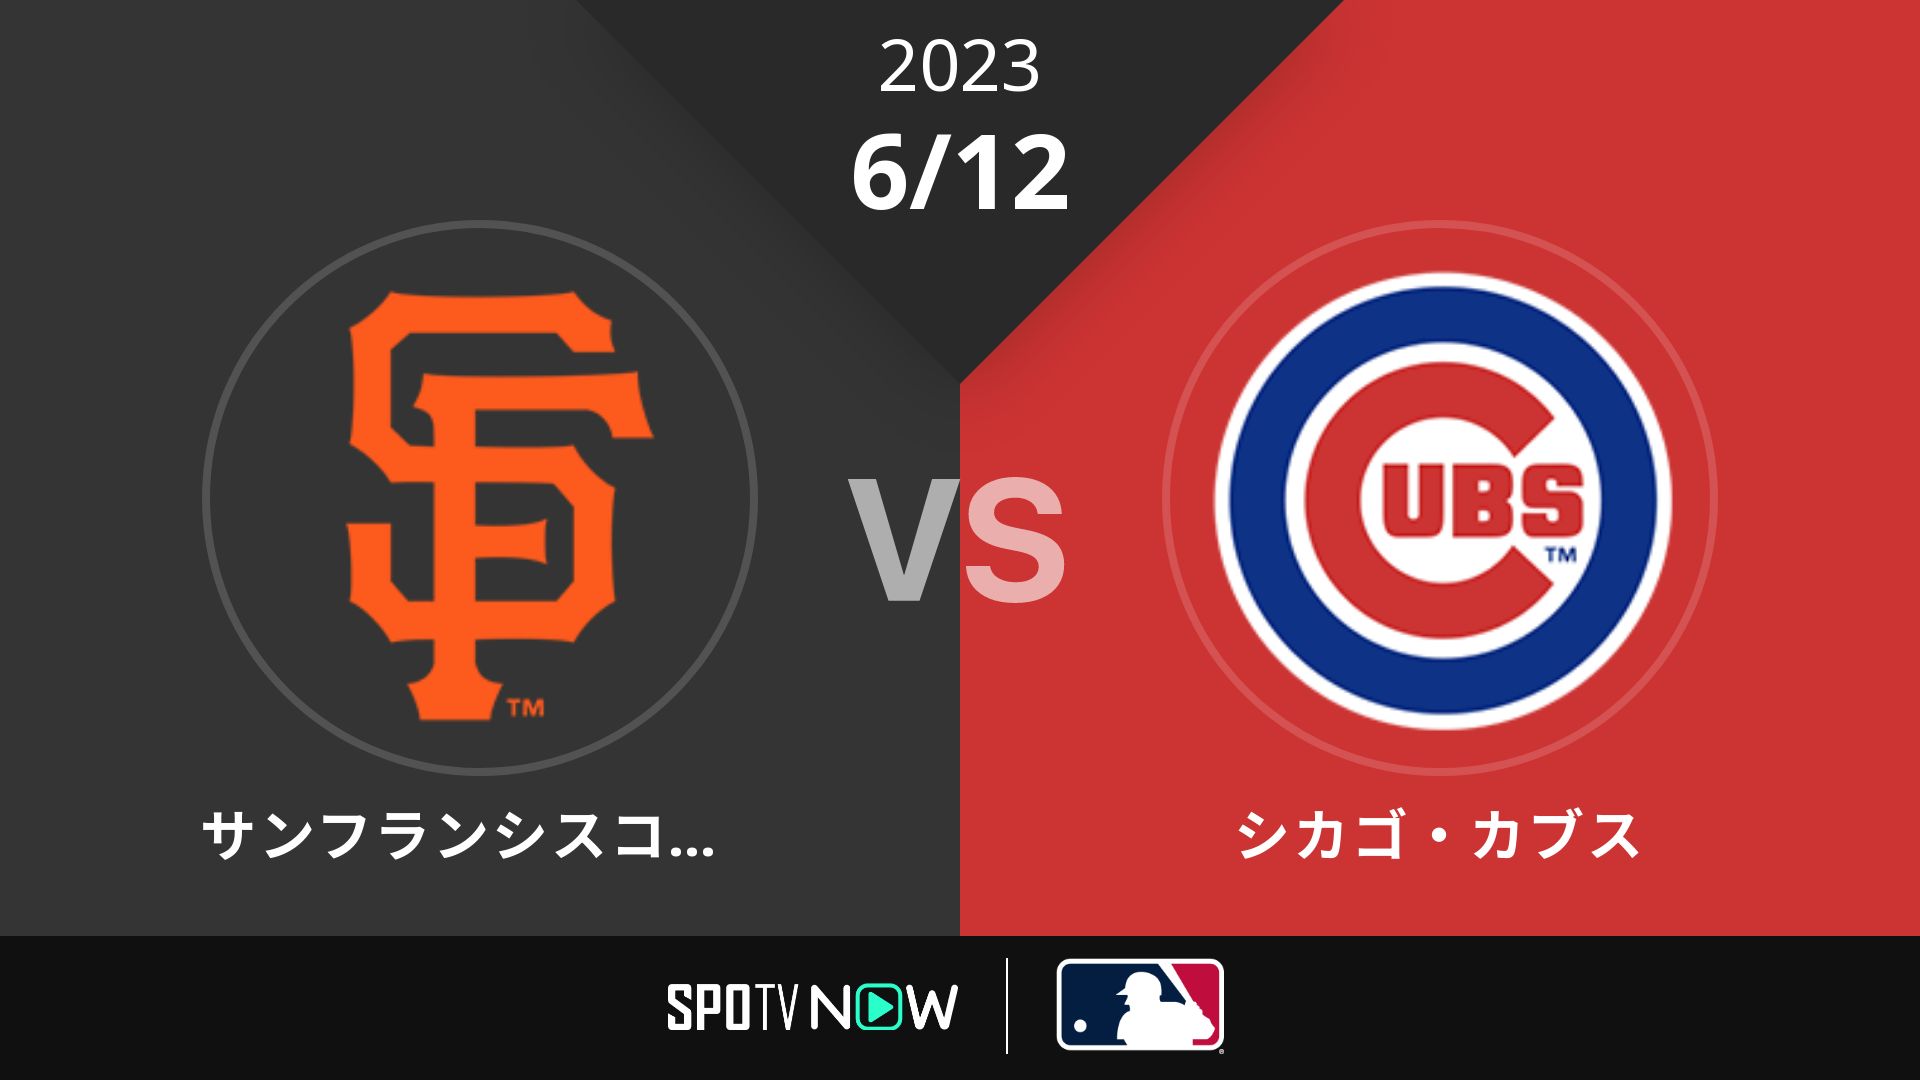 2023/6/12 ジャイアンツ vs カブス [MLB]